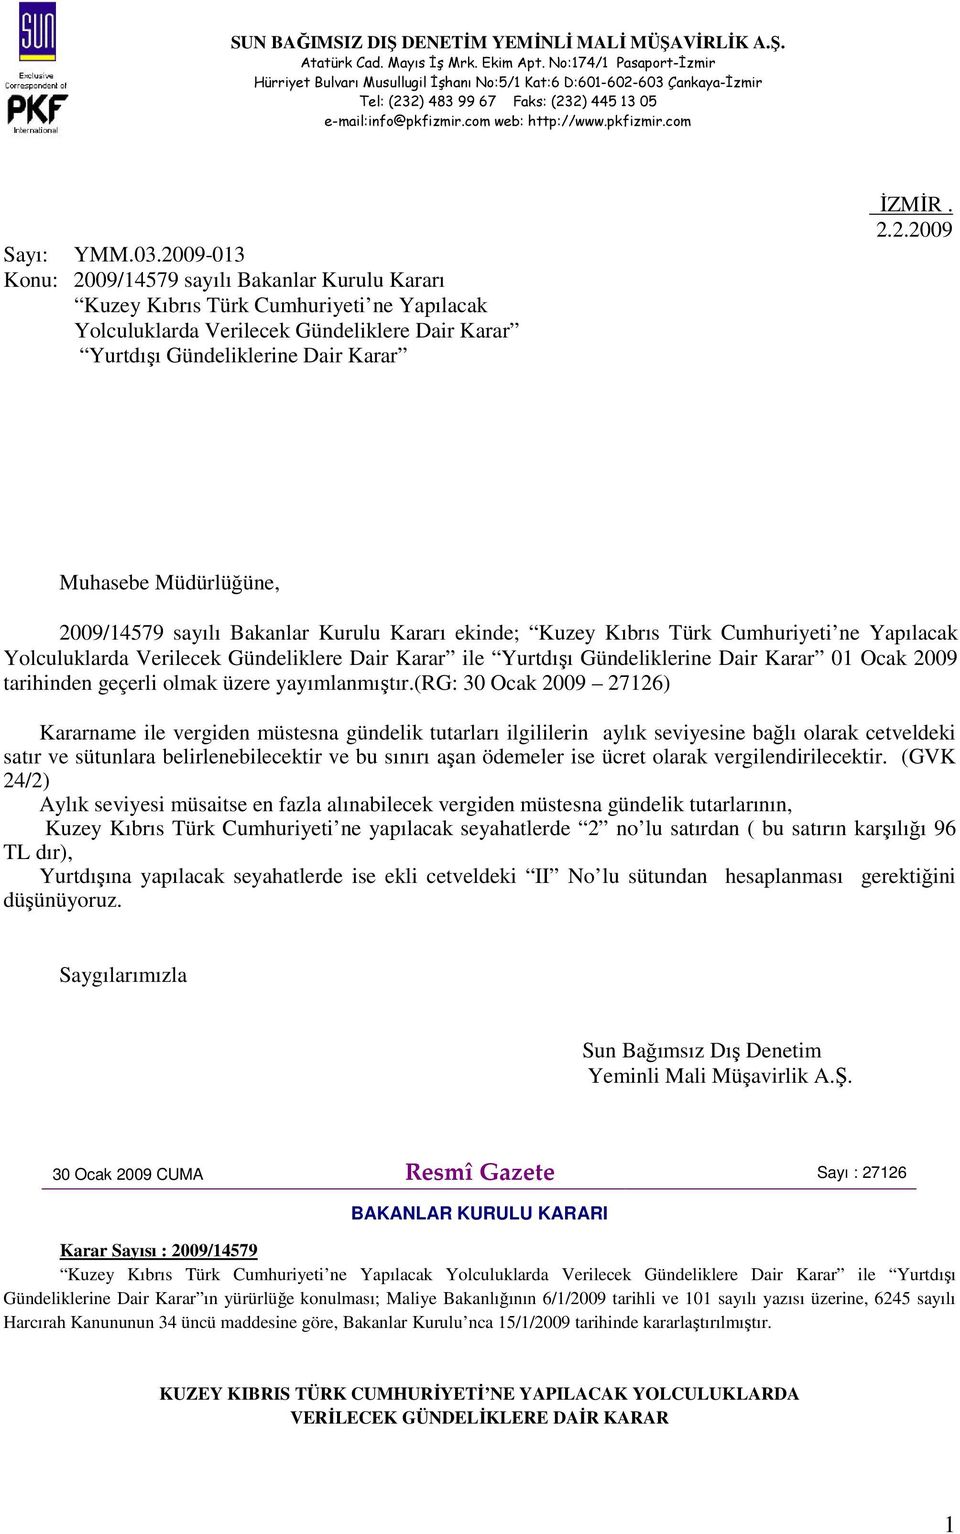 Muhasebe Müdürlüğüne, 2009/14579 sayılı Bakanlar Kurulu Kararı ekinde; Kuzey Kıbrıs Türk Cumhuriyeti ne Yapılacak Yolculuklarda Verilecek Gündeliklere Dair Karar ile Yurtdışı Gündeliklerine Dair